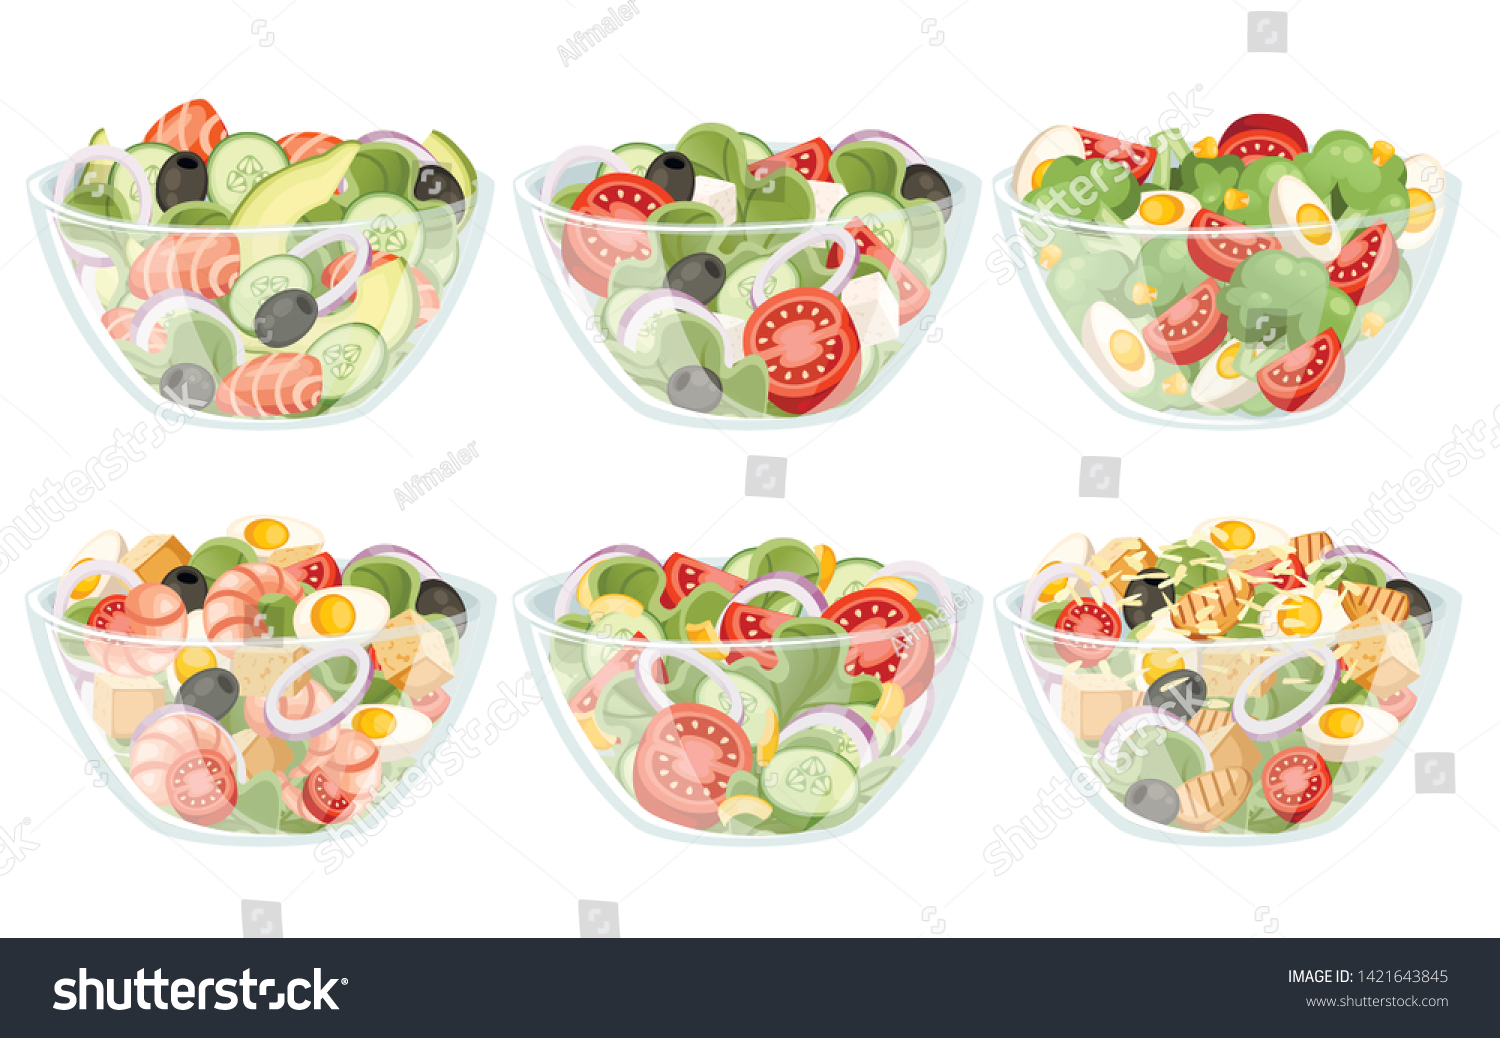 材料の違う野菜サラダのセット 透明な鉢にサラダ 新鮮な野菜の漫画のアイコンデザイン食品 白い背景に平らなベクターイラスト のベクター画像素材 ロイヤリティフリー